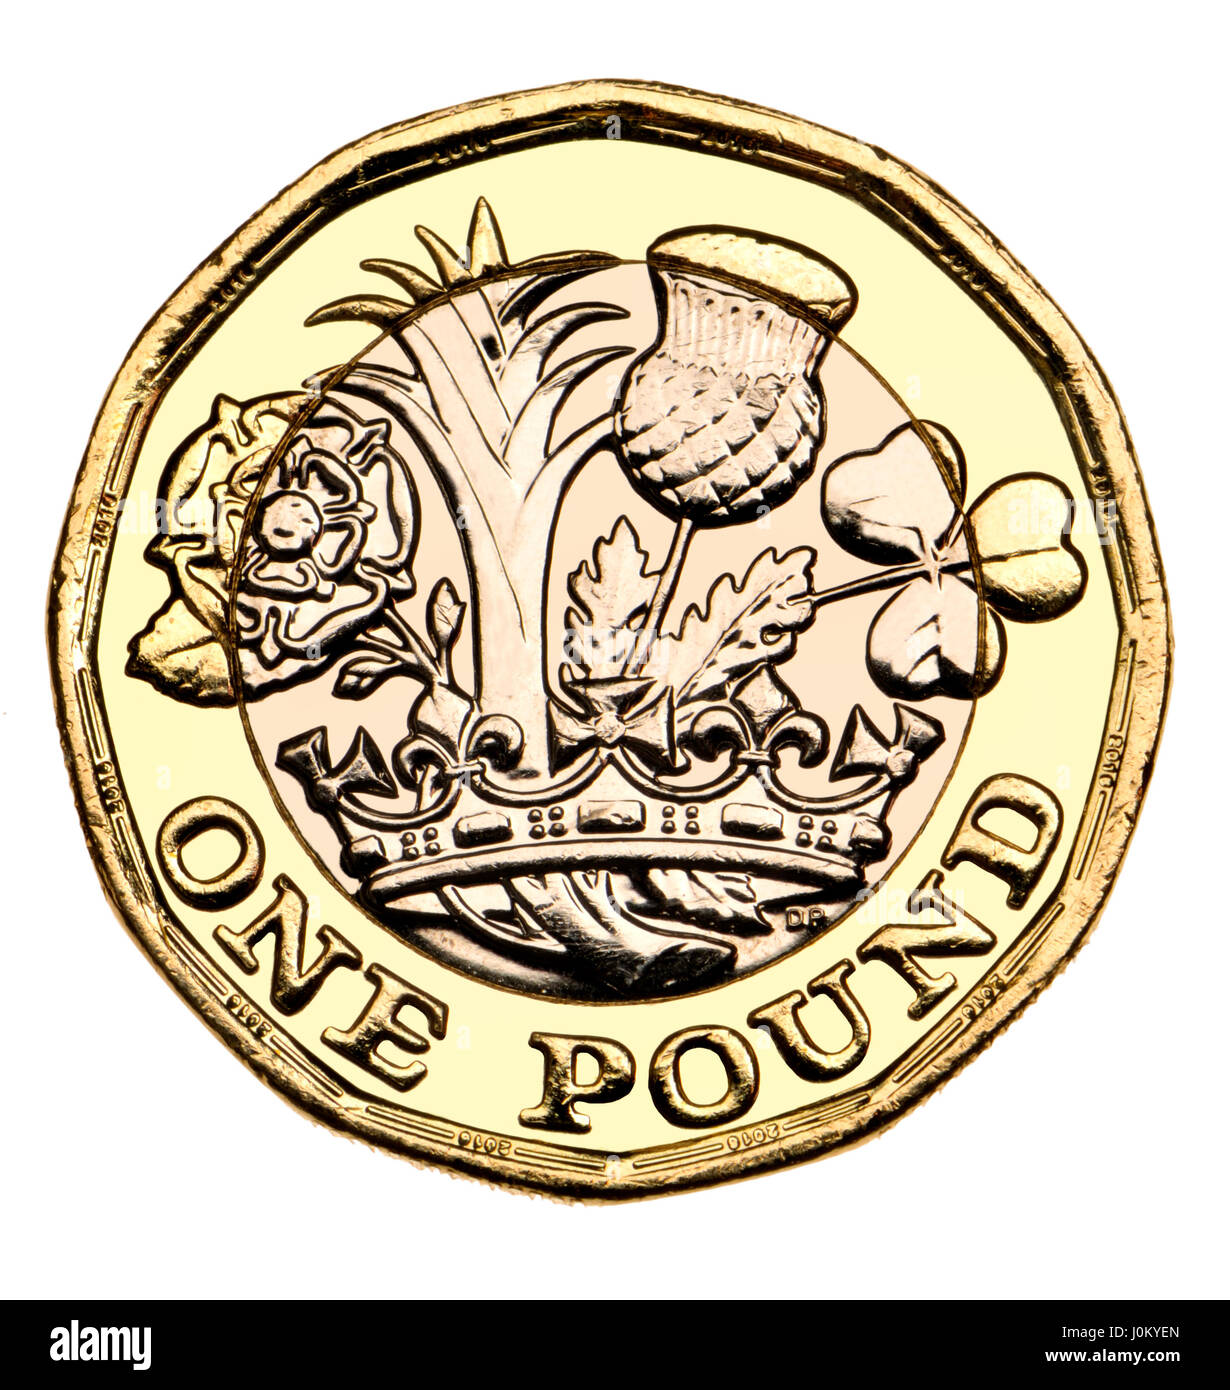 British pound coin - dodici facciate bimetallici di 2017 release (datata 2016) Foto Stock